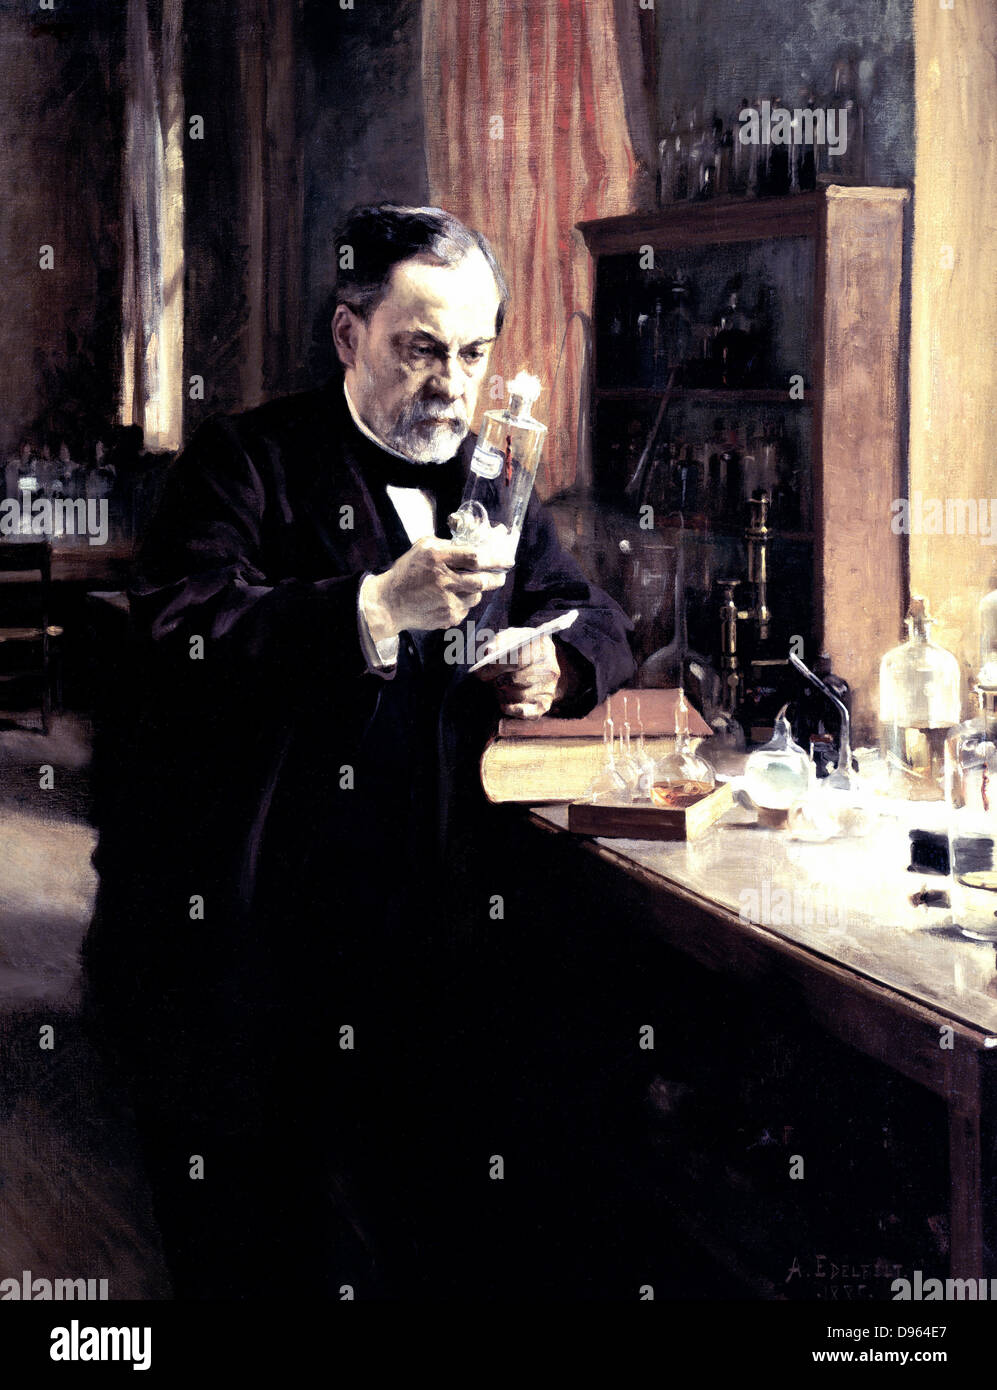 Louis Pasteur (1822-1895), französischer Chemiker und Biologe bei der Arbeit in seinem Labor c 1889. Pionier der Impfung gegen Tollwut. Albert Edelfelt (1854-1905) Französisch. Malerei. Öl auf Leinwand. Musee d'Orsay, Paris. Stockfoto